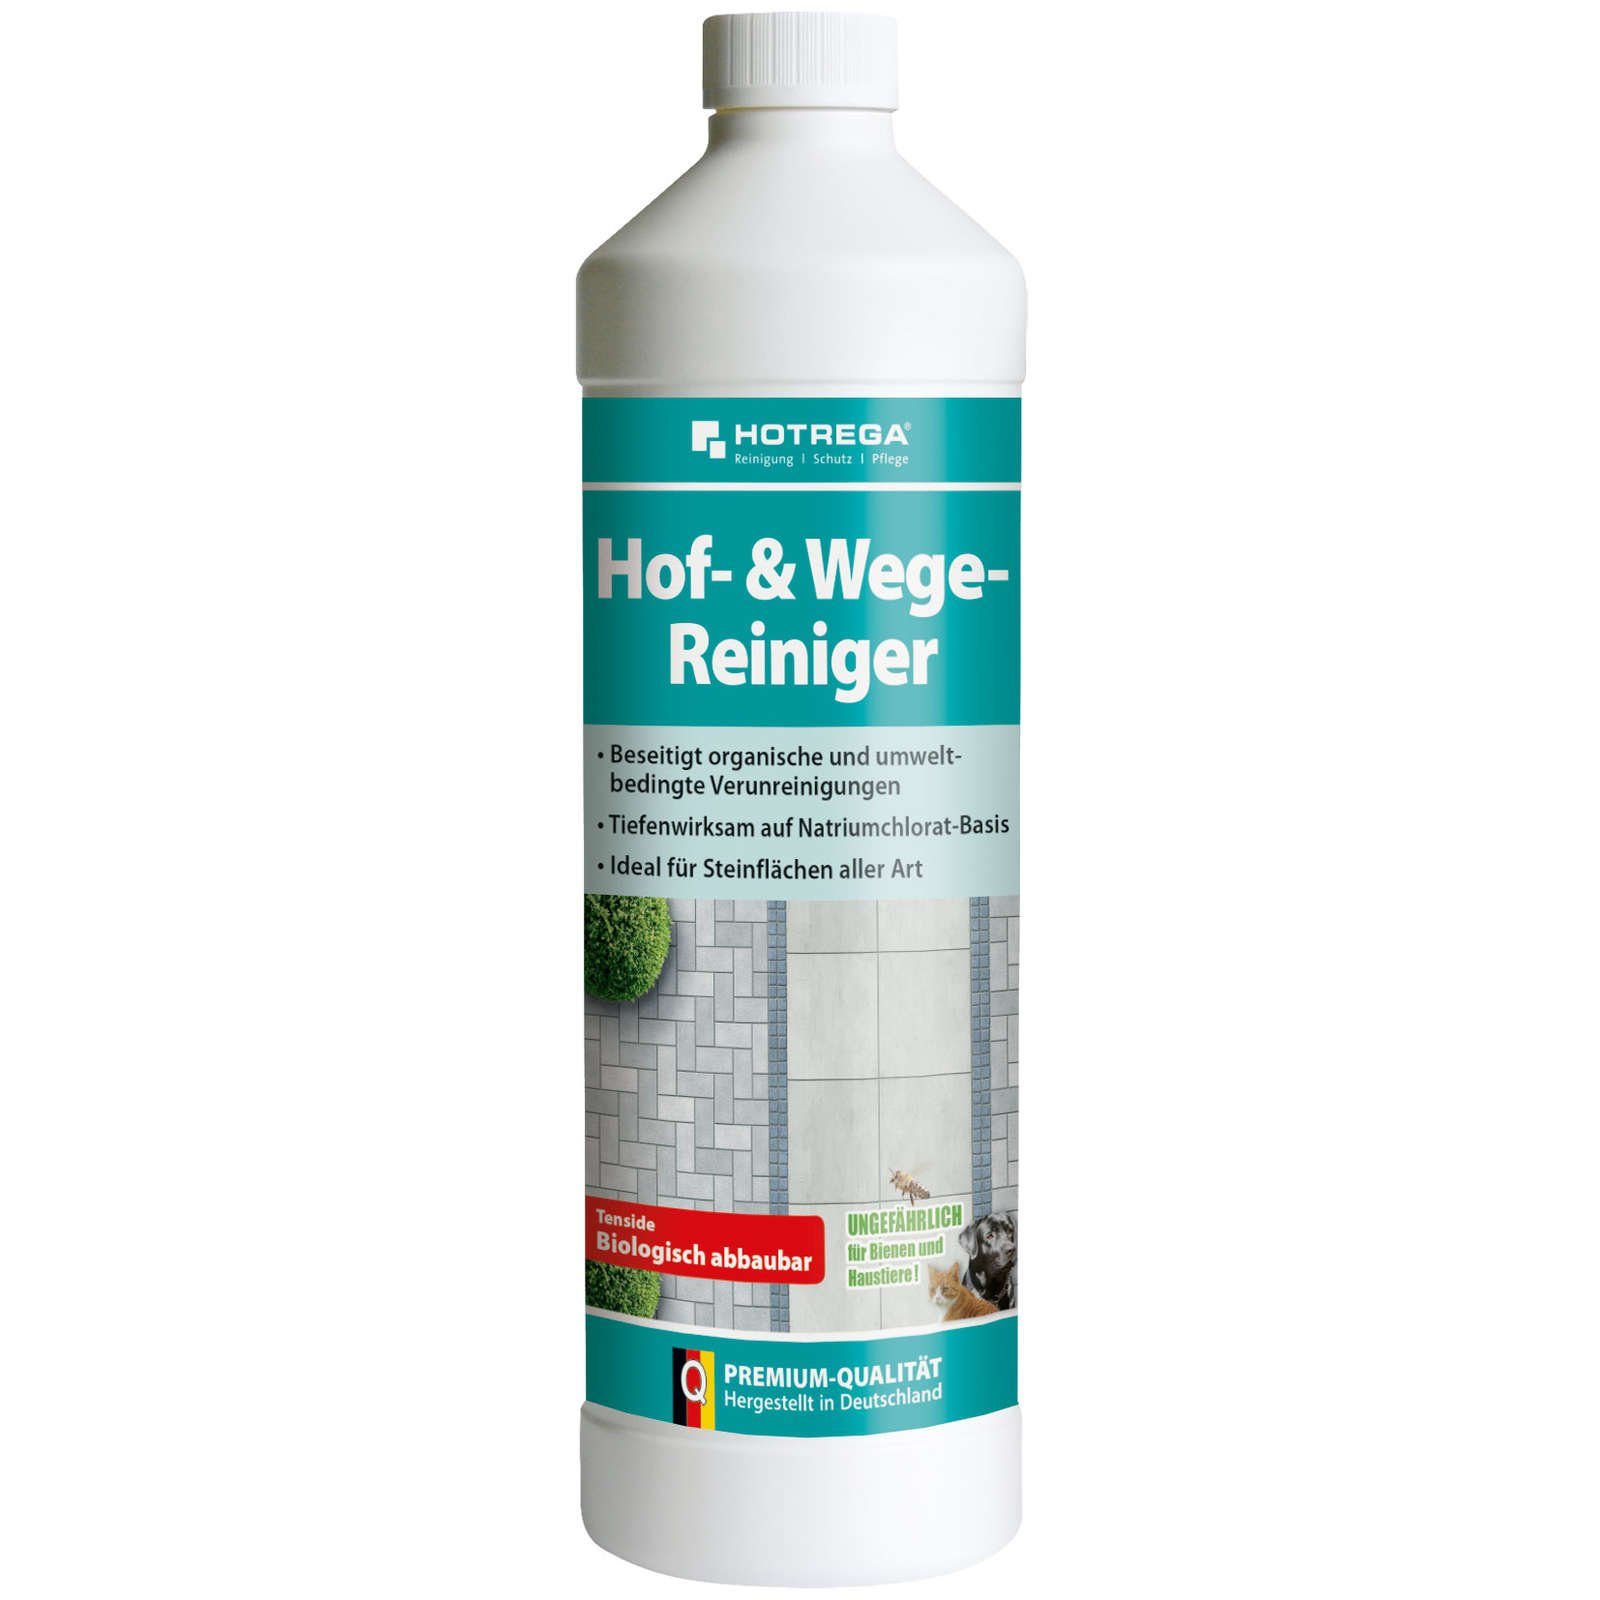 HOTREGA® Hof- & Wege-Reiniger Konzentrat 1 Liter Reinigungskonzentrat